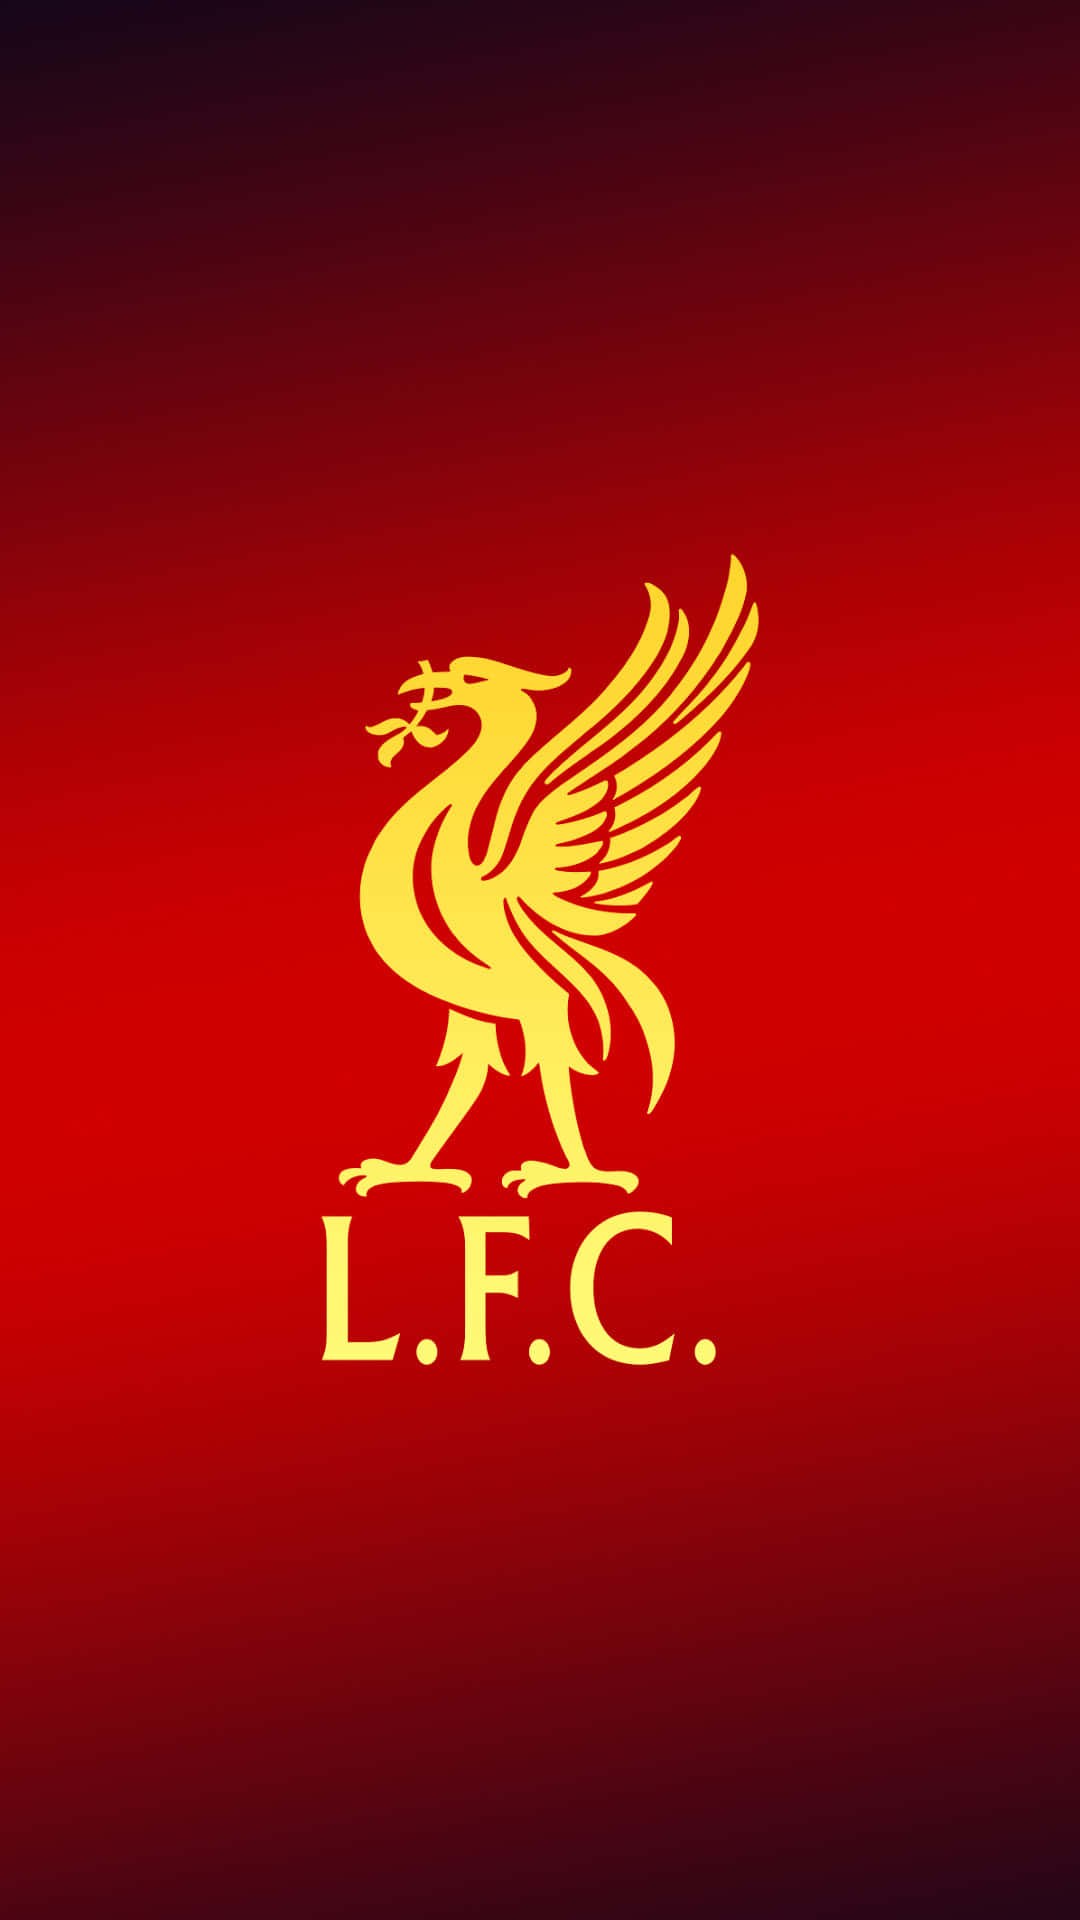 Detofficielle Logo For Liverpool Fc På En Iphone. Wallpaper